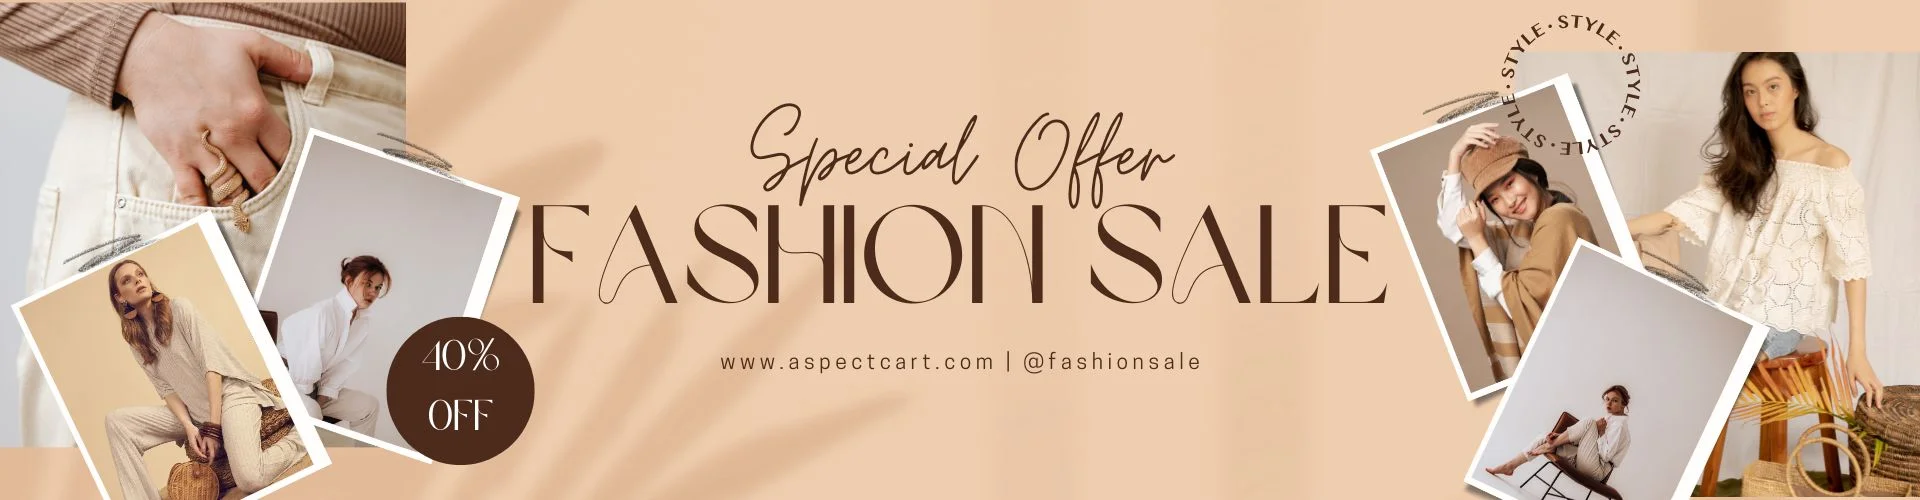 Banner voor een speciale aanbieding bij een online modewinkel